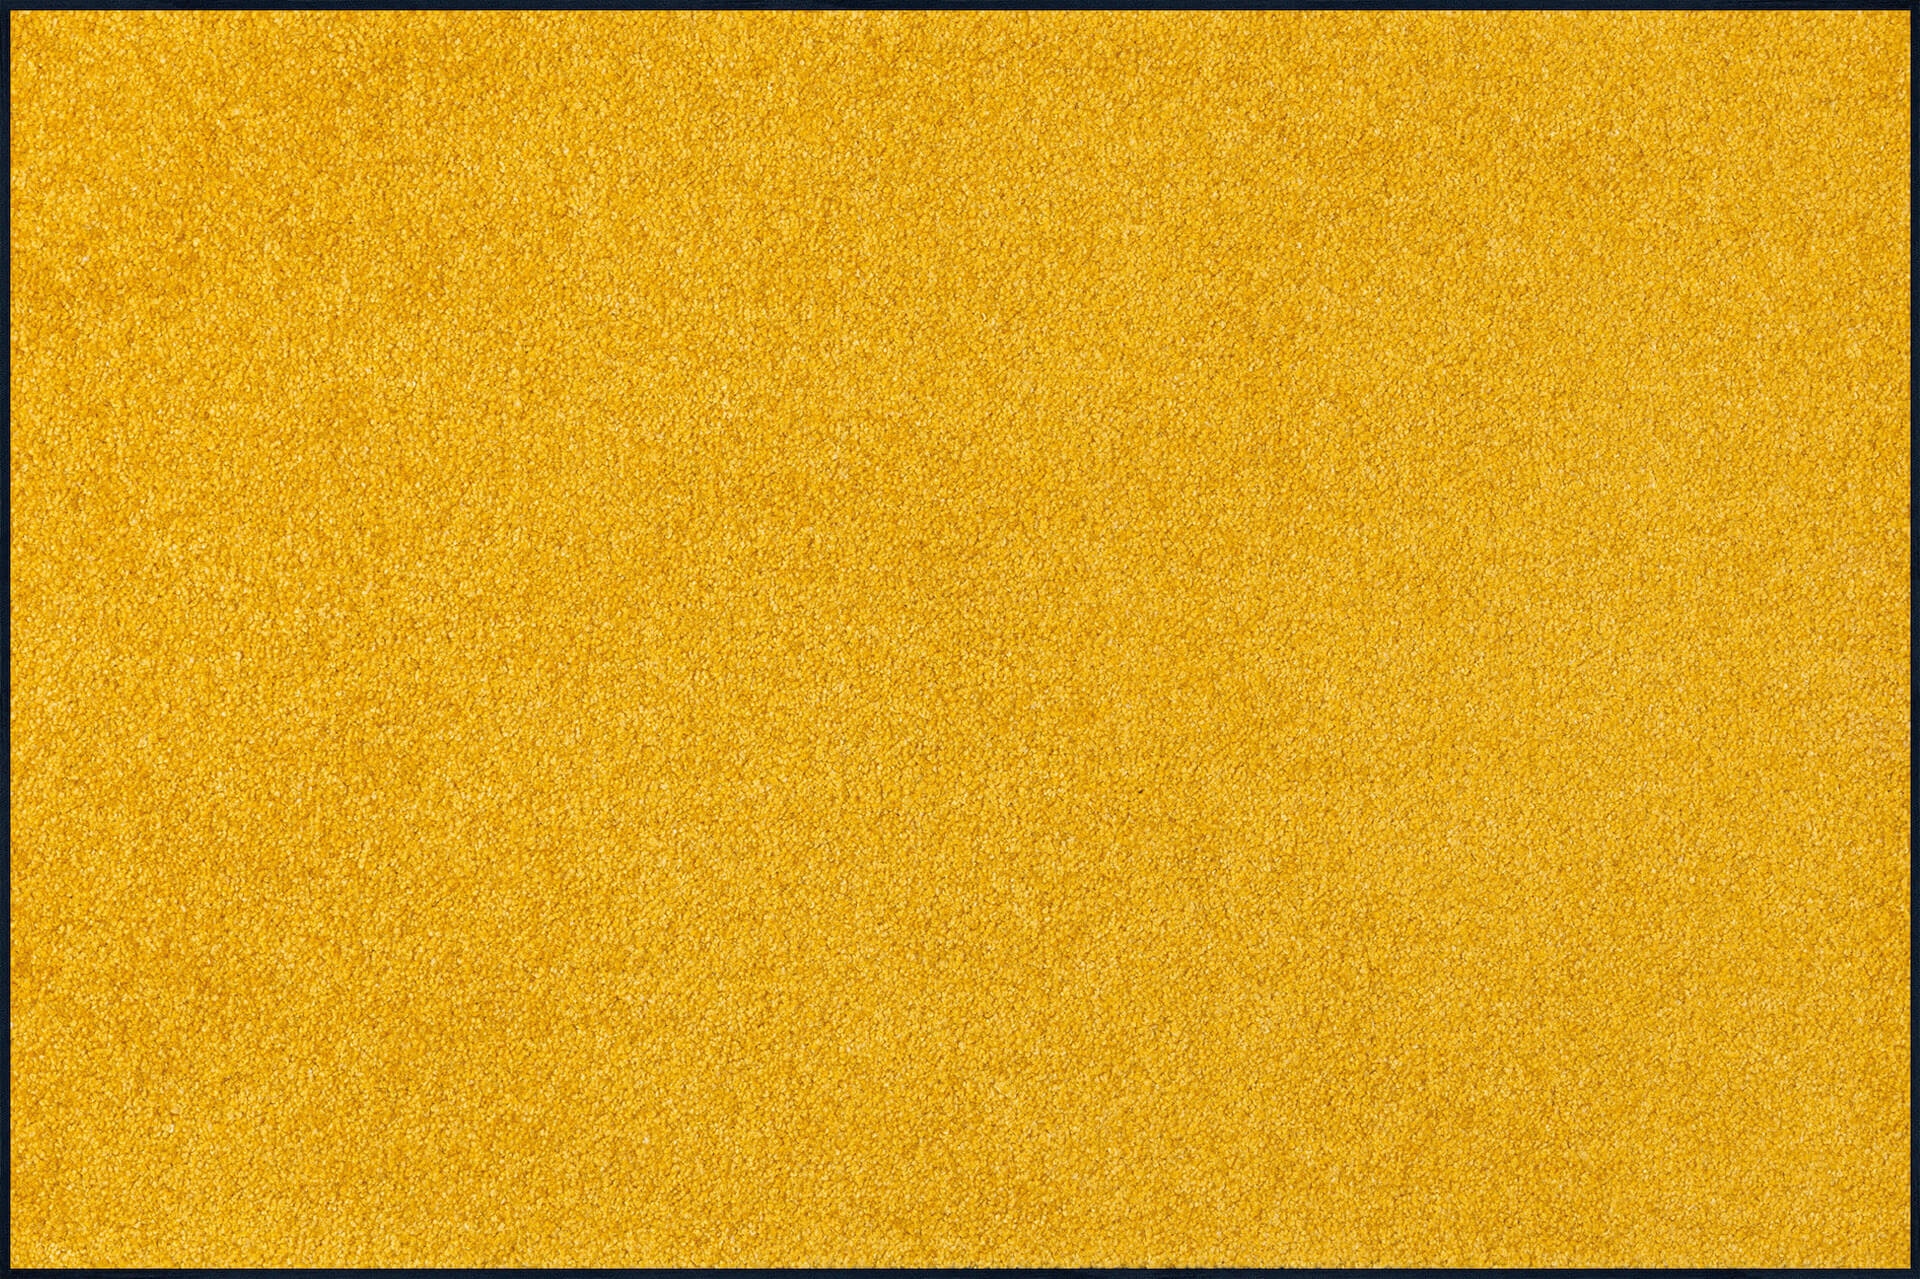 Fußmatte nach Maß Trend Colour Honey Gold, Wash & Dry Qualität, Draufsicht